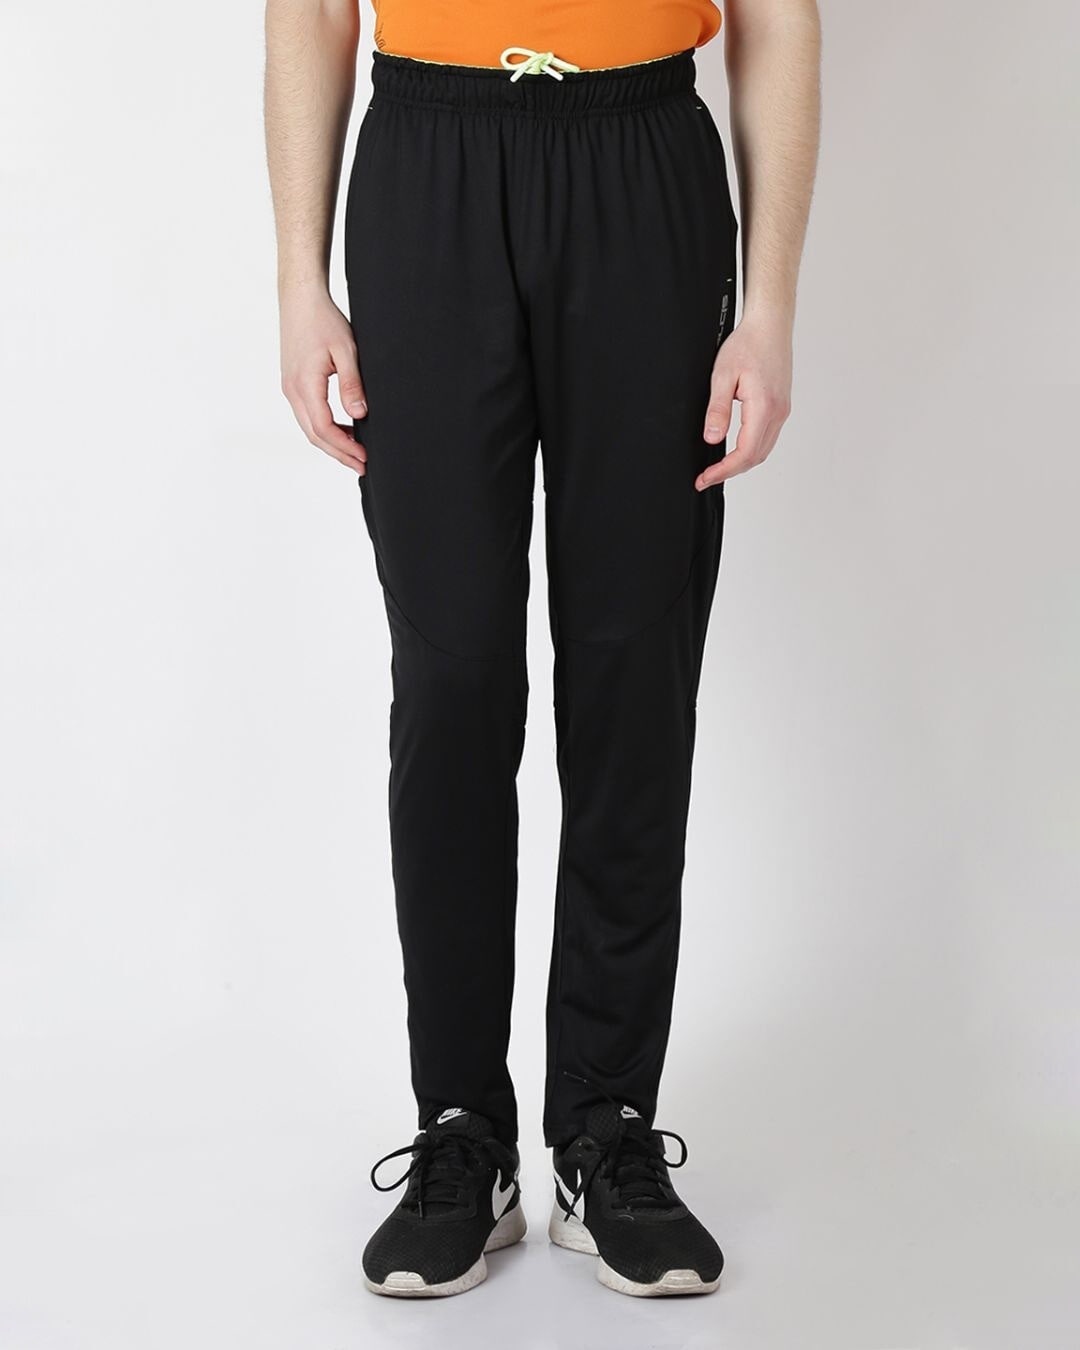 Shop Men Black Solid Slim Fit Track Pants